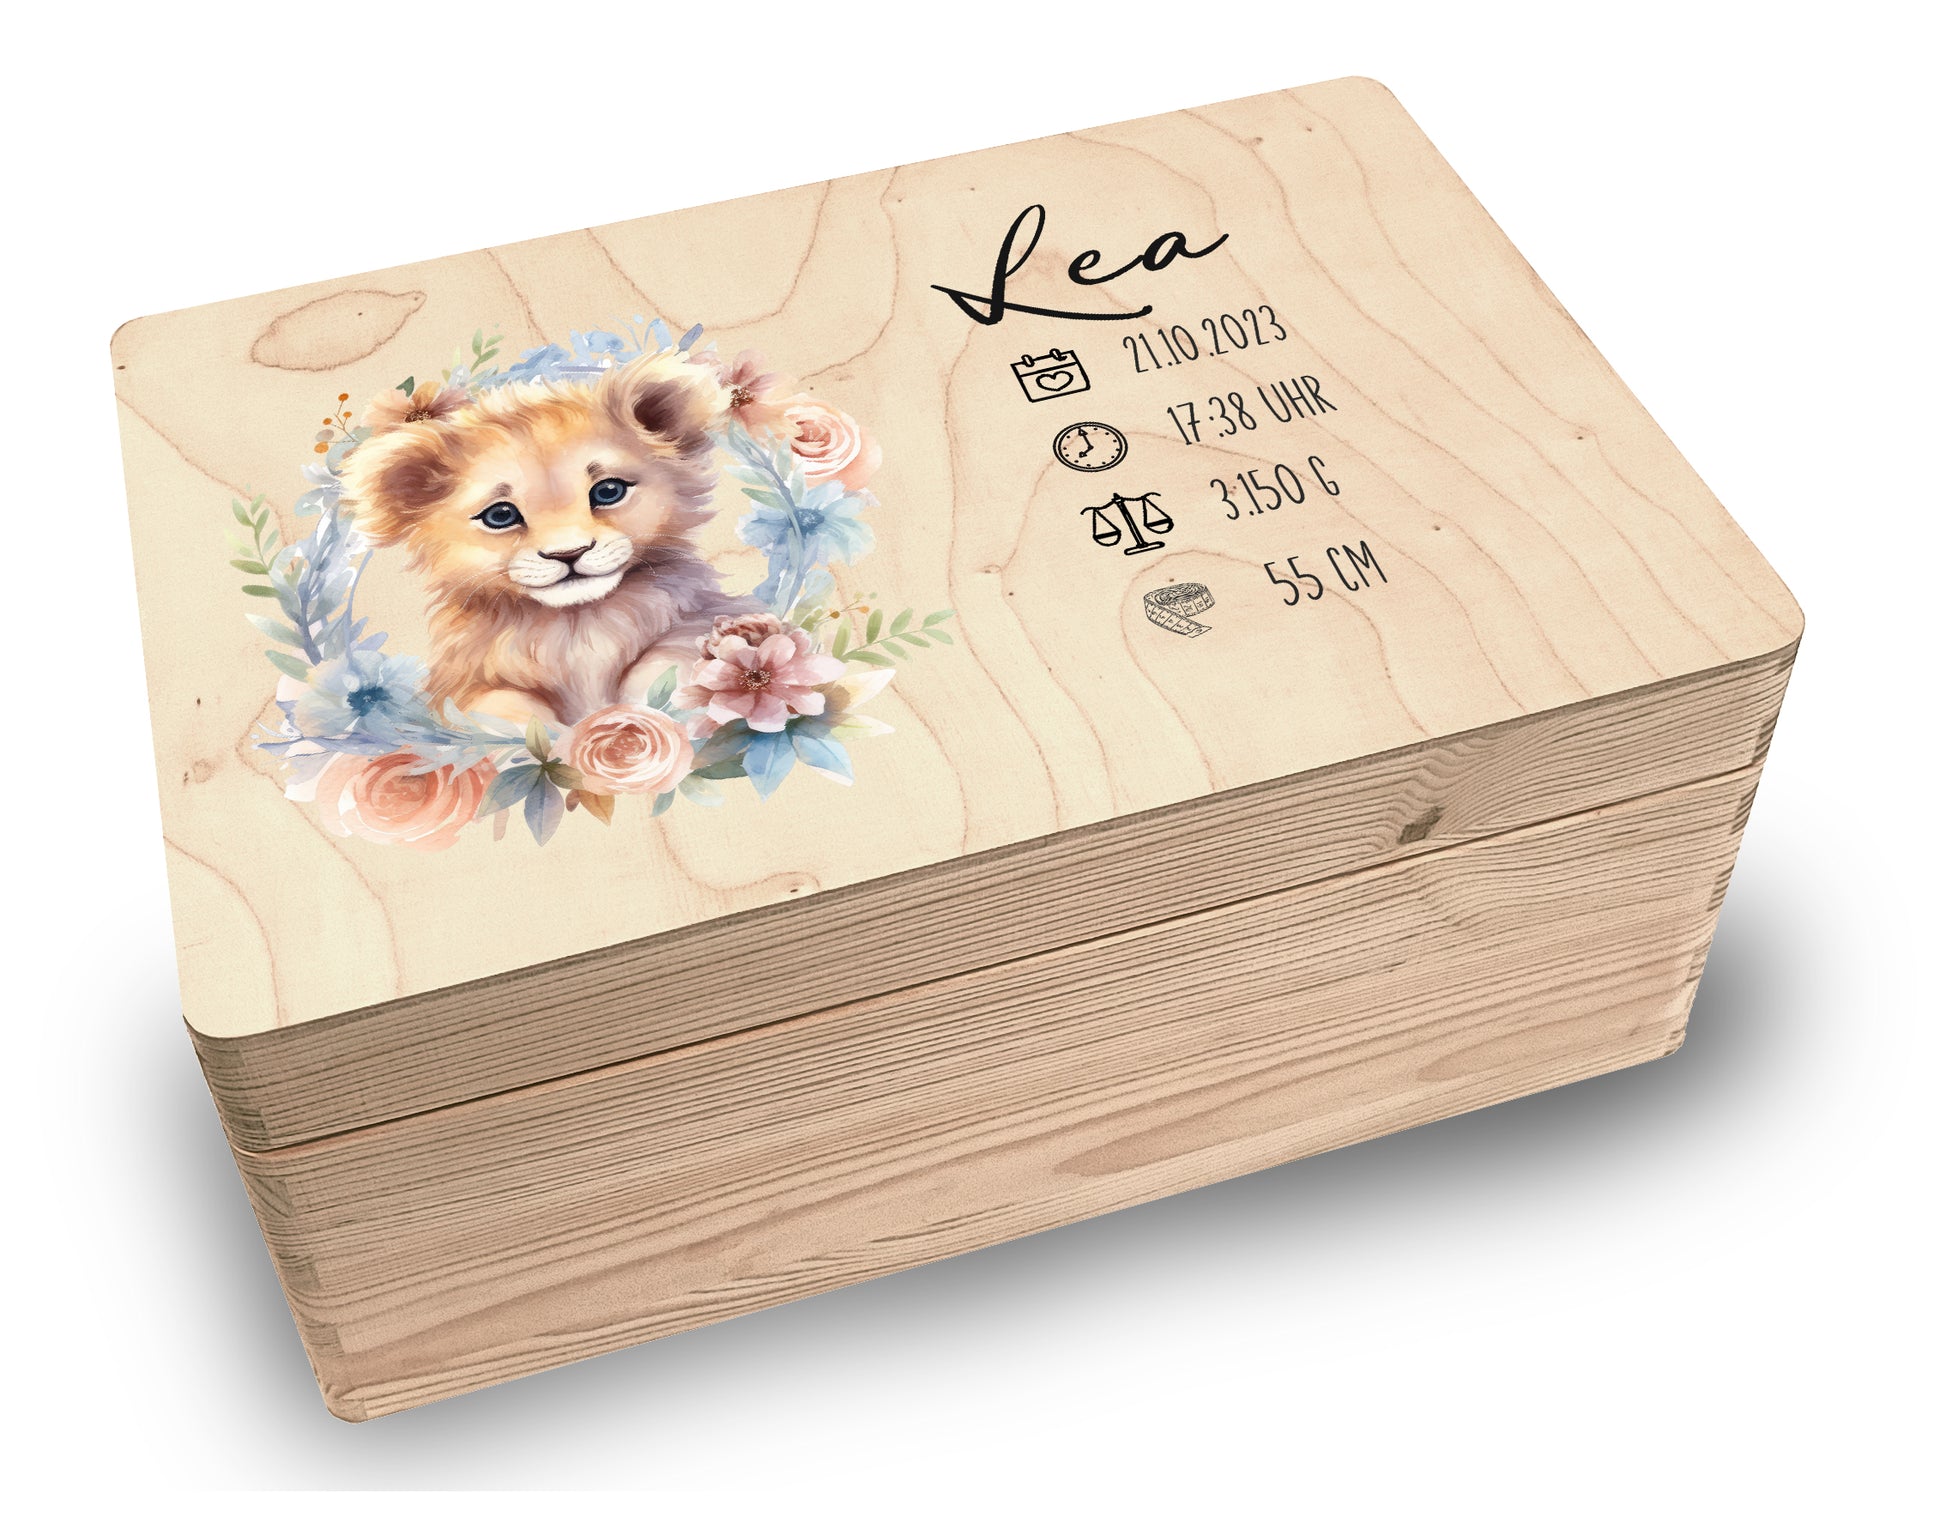 Erinnerungsbox personalisiert für Baby & Kind - Tiermotive - 30x20x14cm - Holzkiste Geschenk zur Geburt